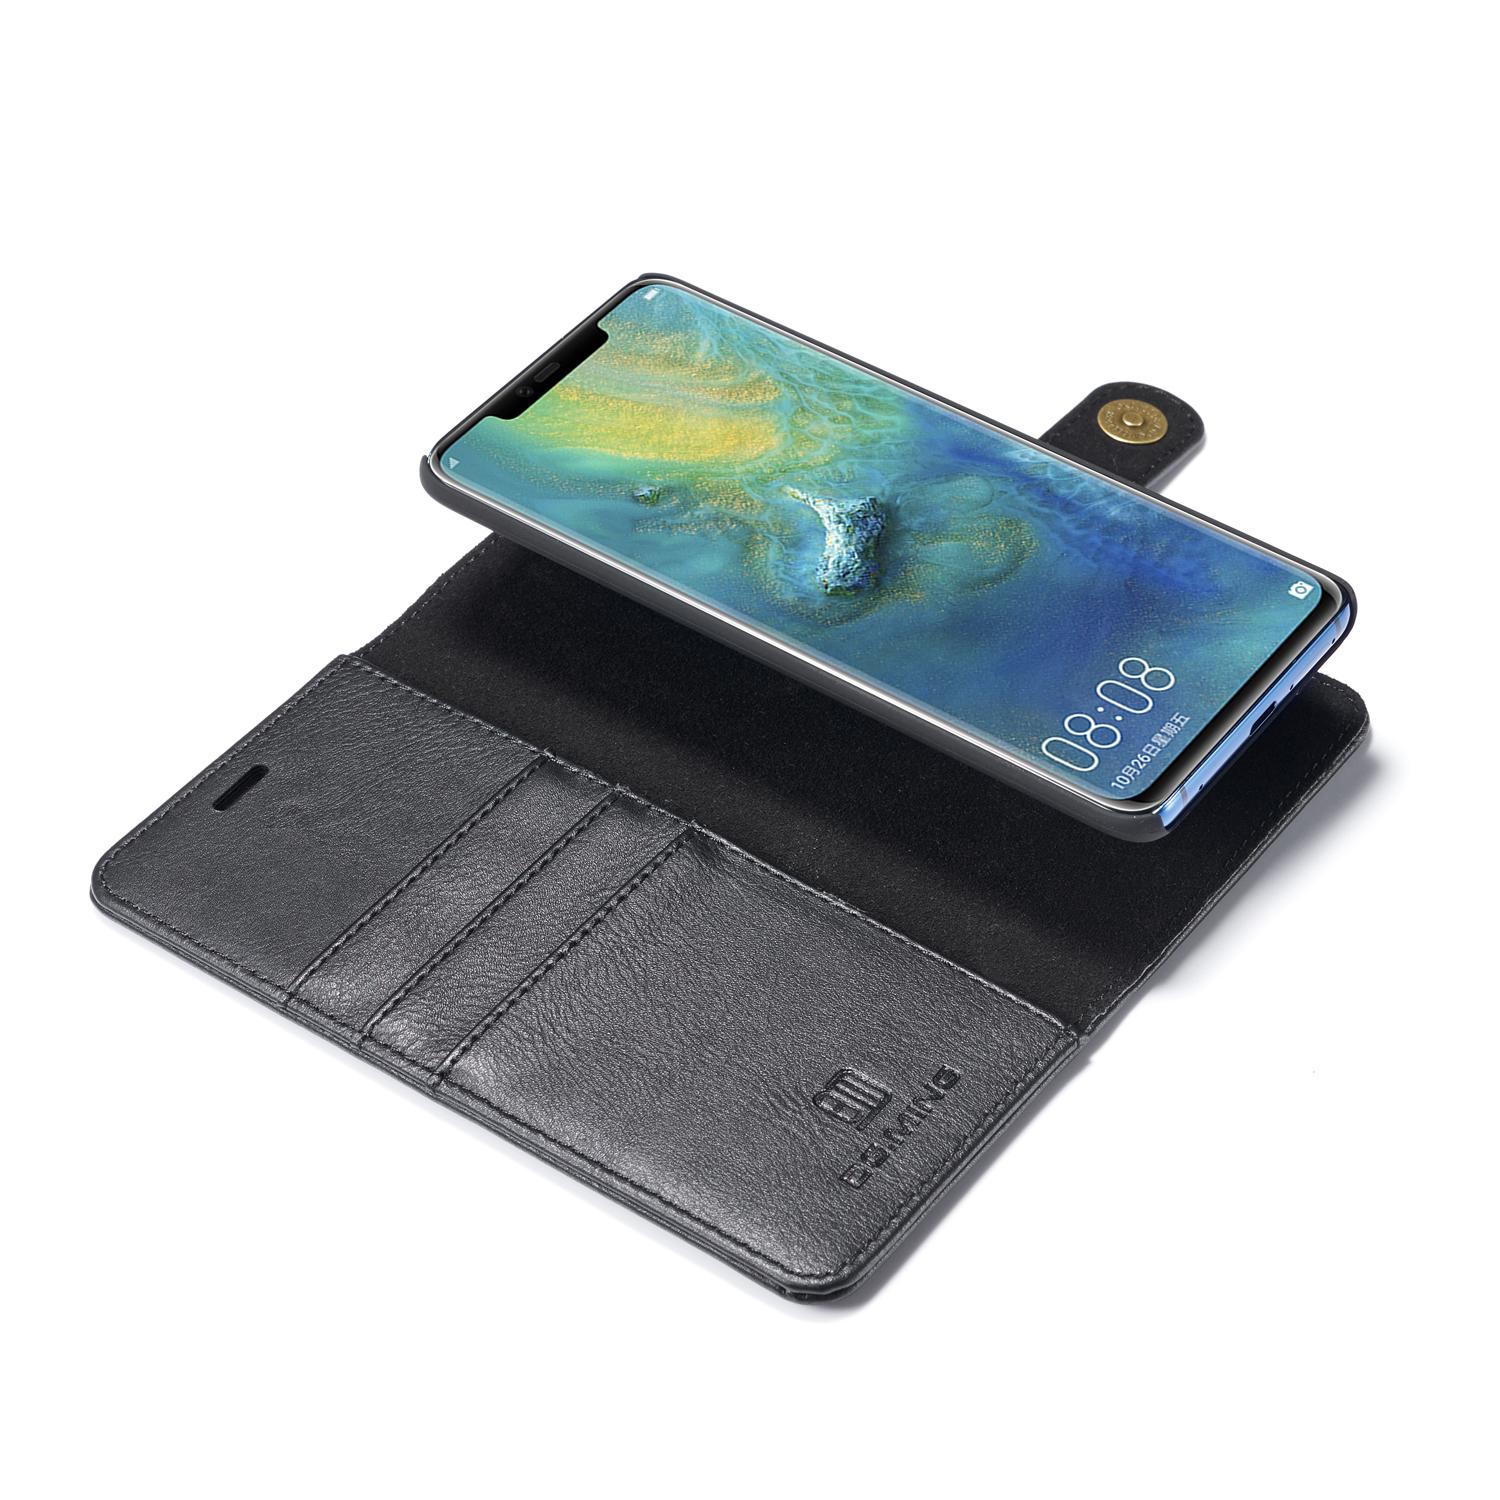 Huawei Mate 20 Pro Plånboksfodral med avtagbart skal, svart